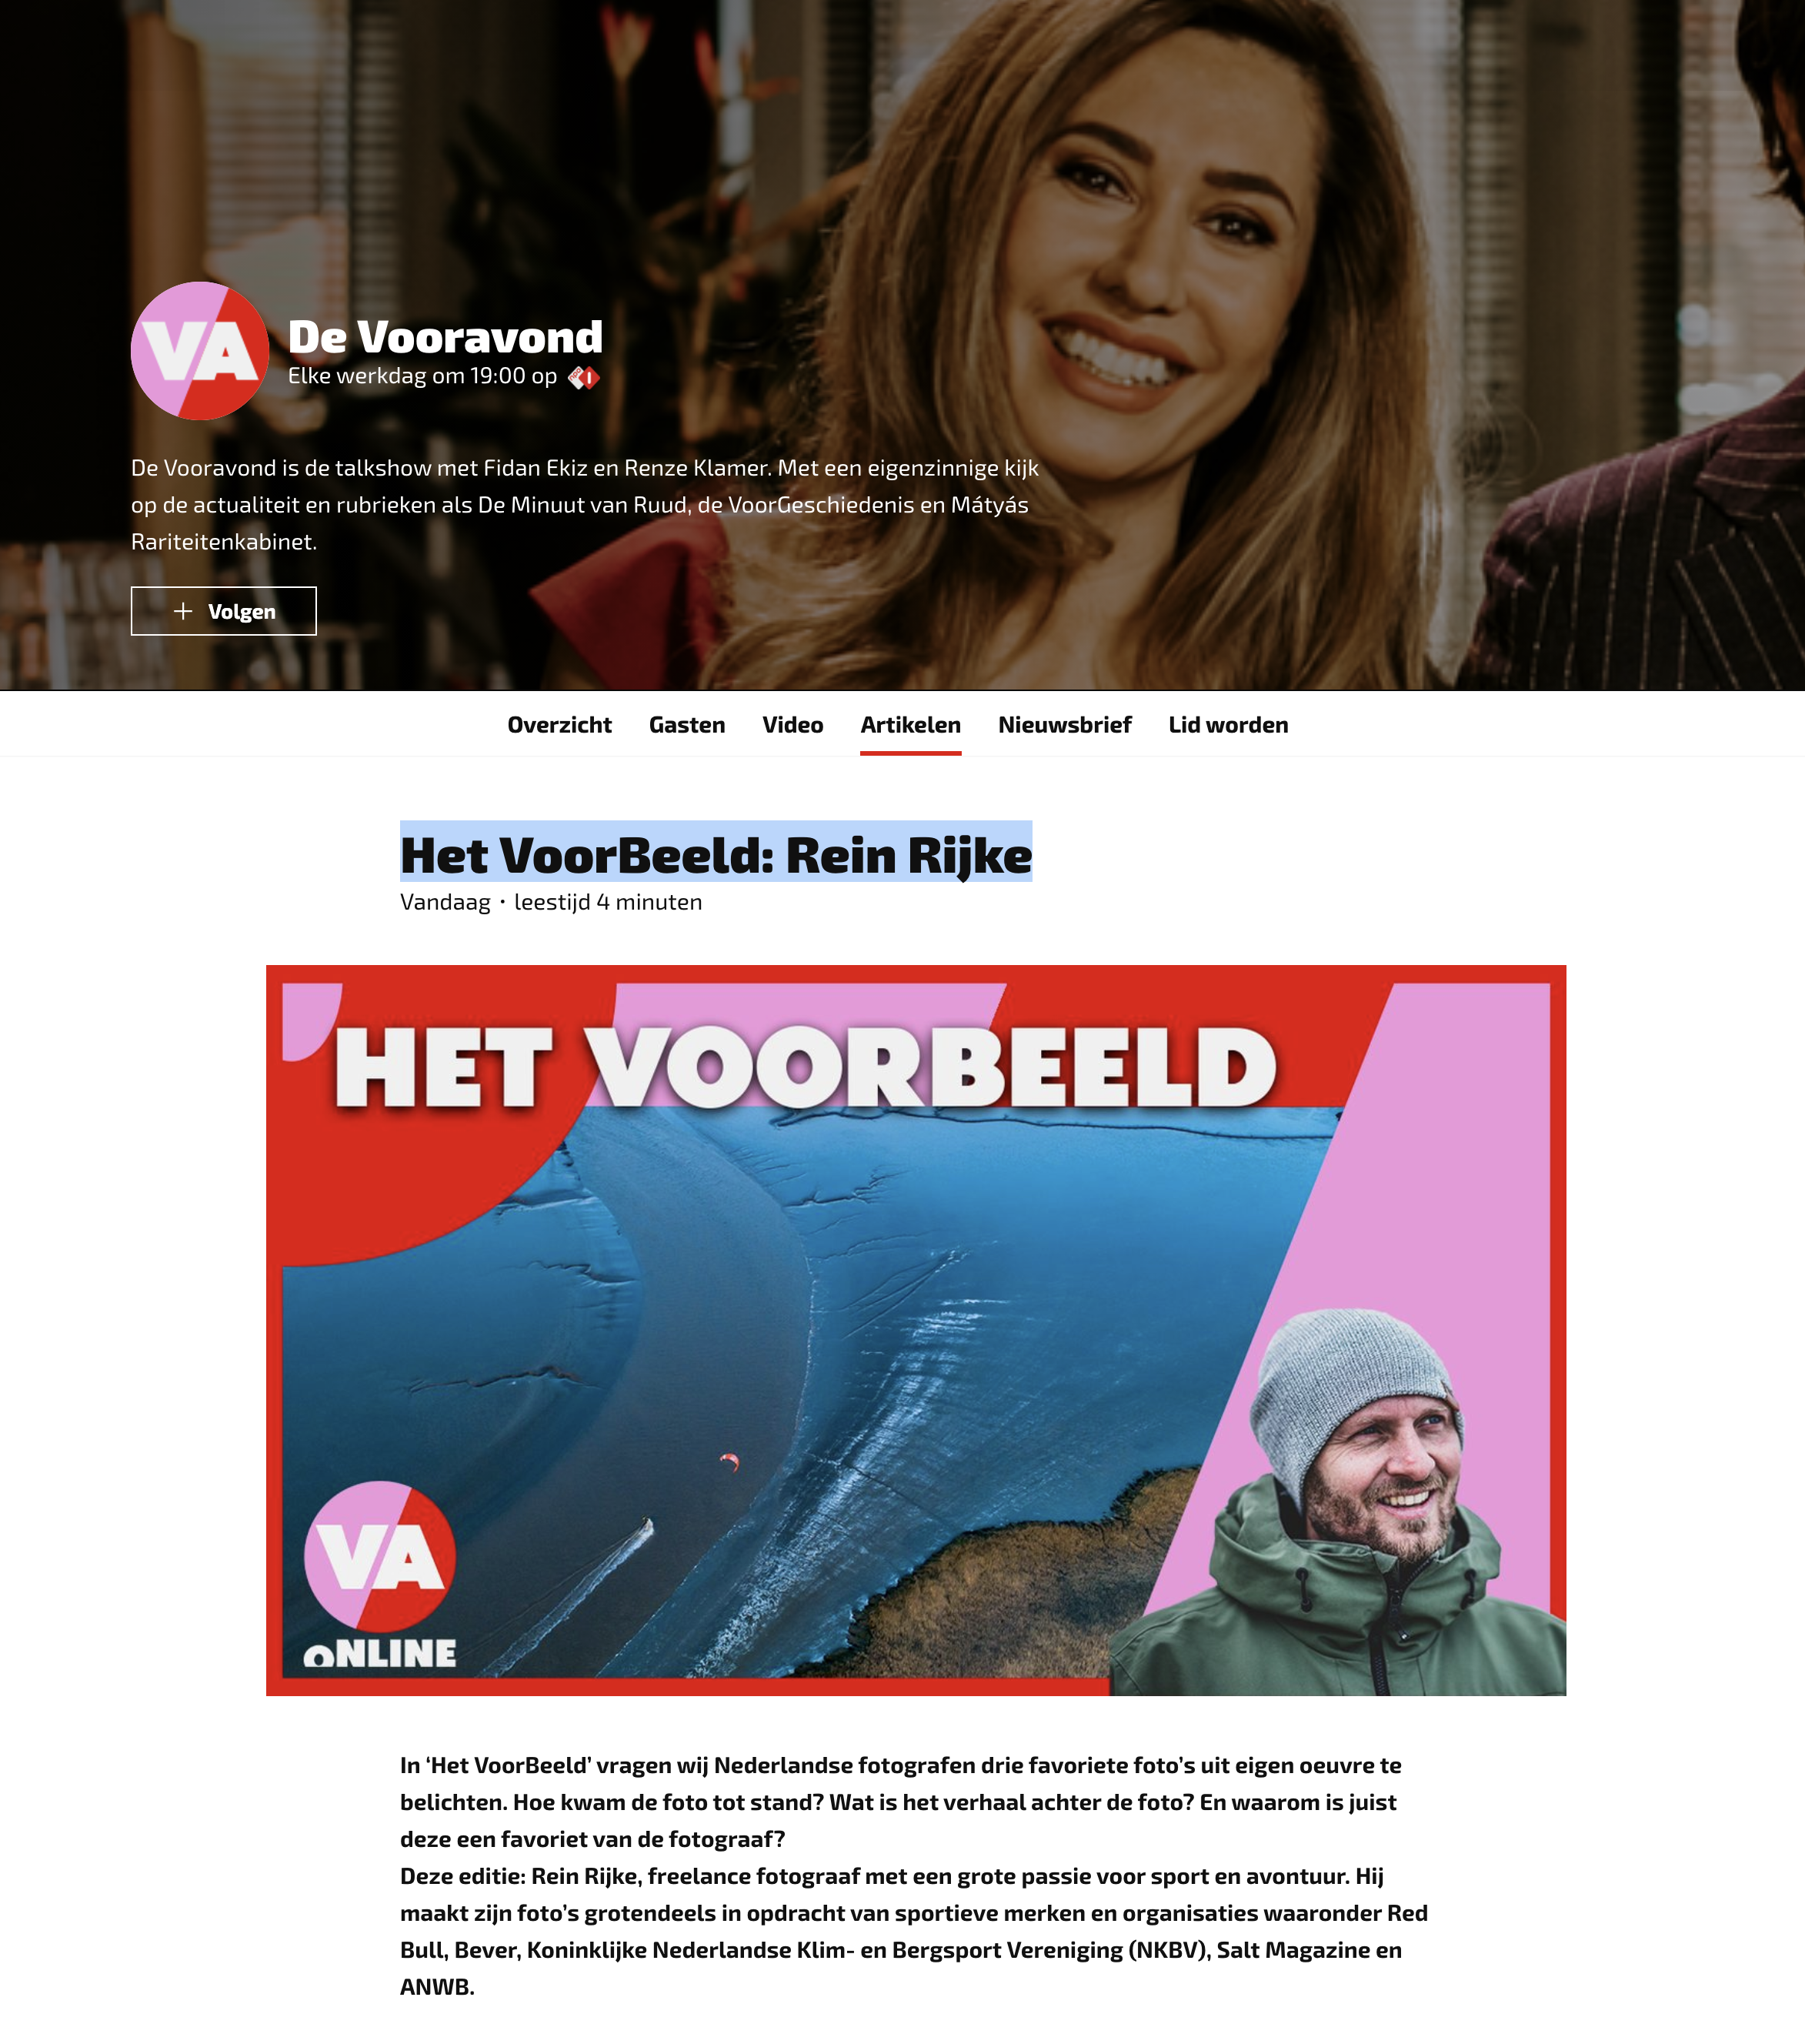 Verniel censuur Uitmaken Item in BNN/Vara De Vooravond - Zout Fotografie || Rein Rijke